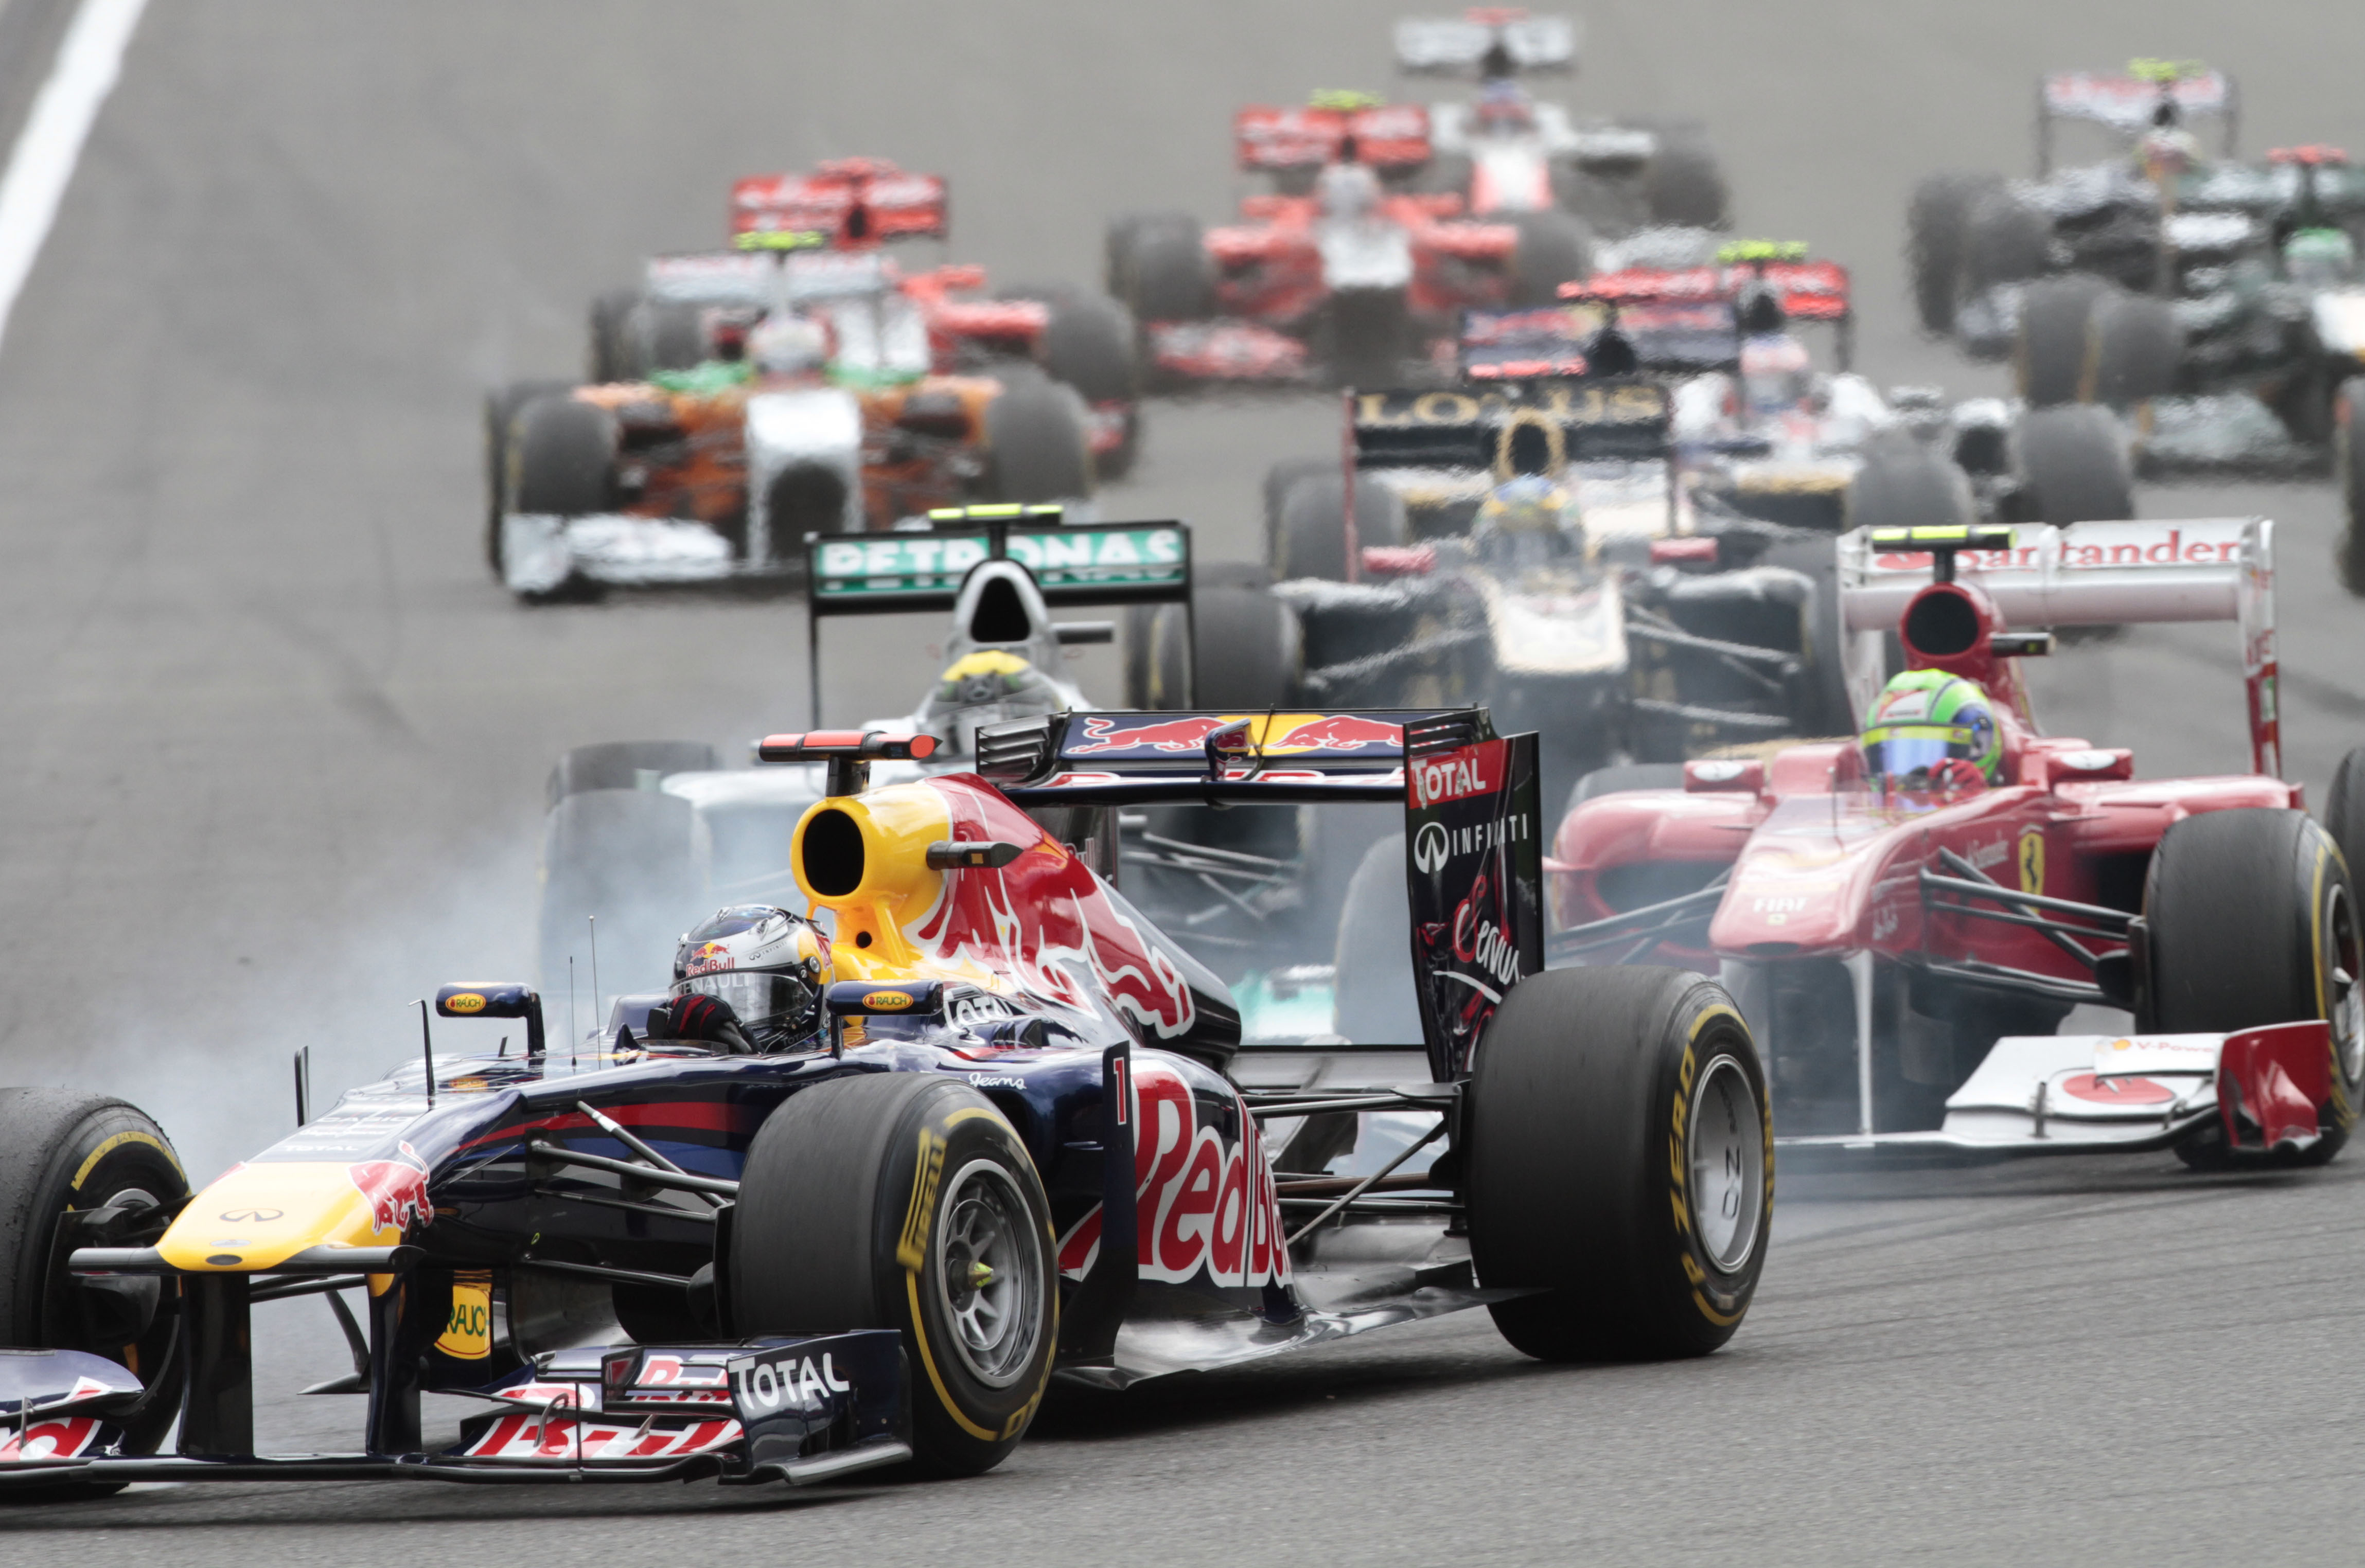 Mark Webber, Formel 1, Sebastian Vettel, Fernando Alonso, Red Bull, Lewis Hamilton